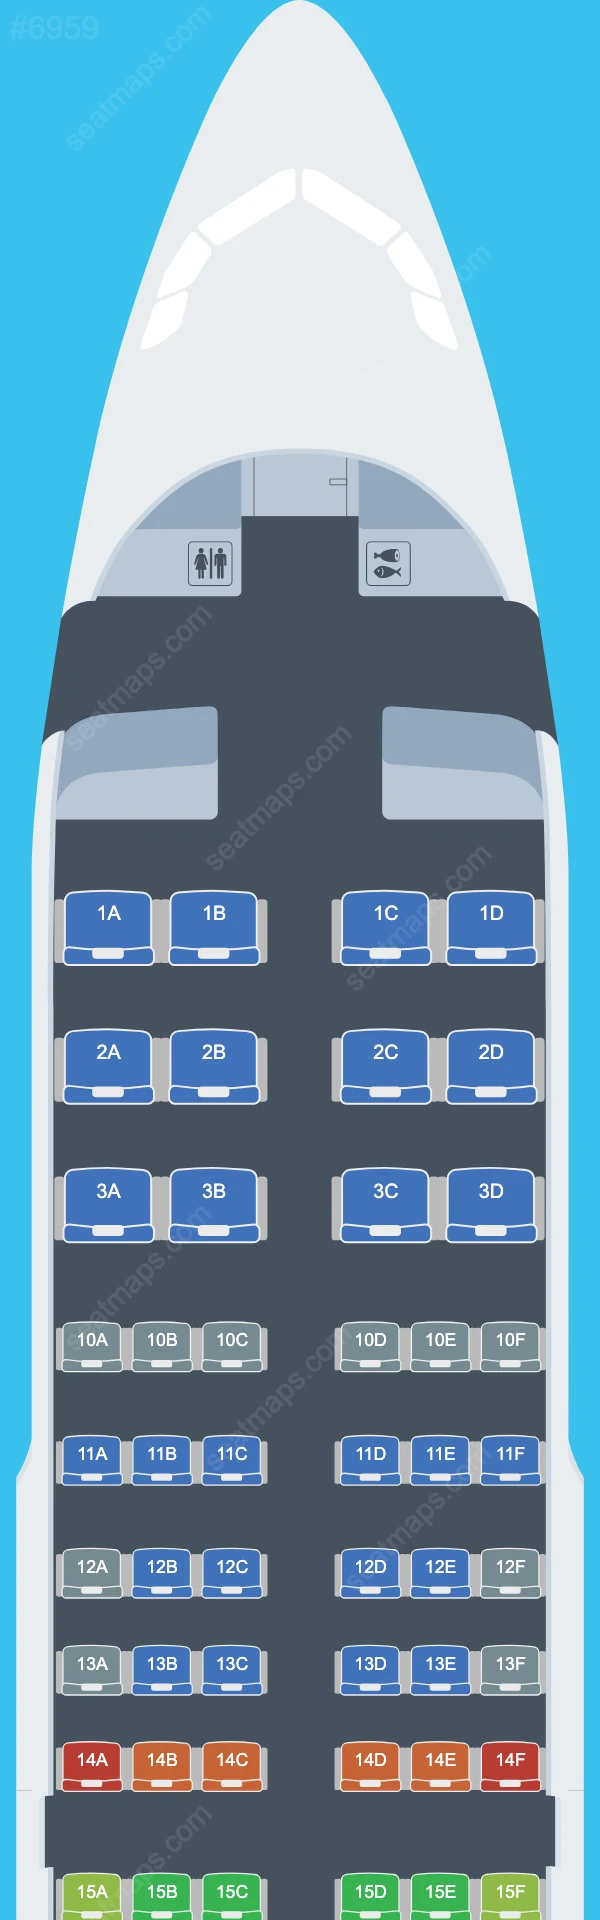 Delta Airbus A319 シートマップ A319-100 V.1